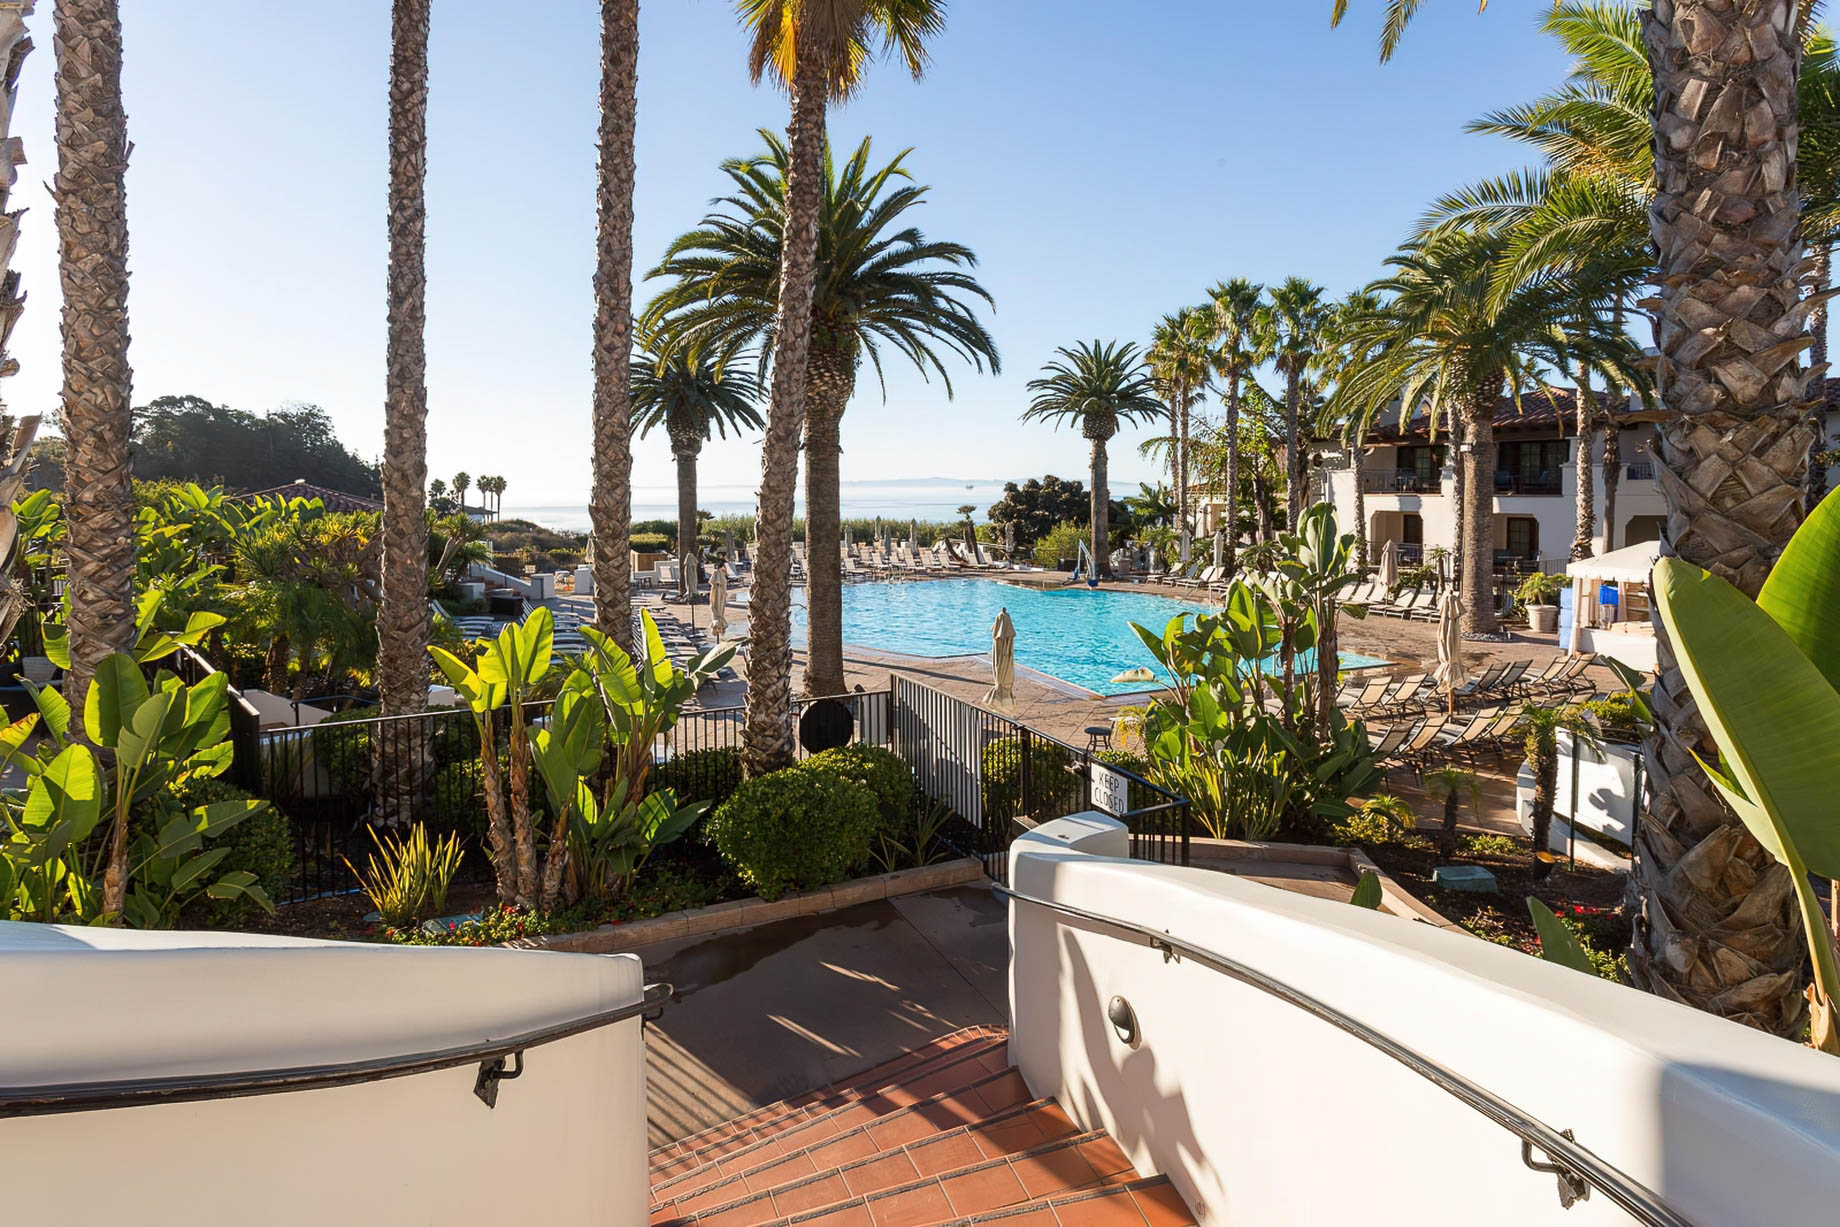 The Ritz-Carlton Bacara, Santa Barbara Resort – Santa Barbara, CA, USA – Resort Pool Deck View